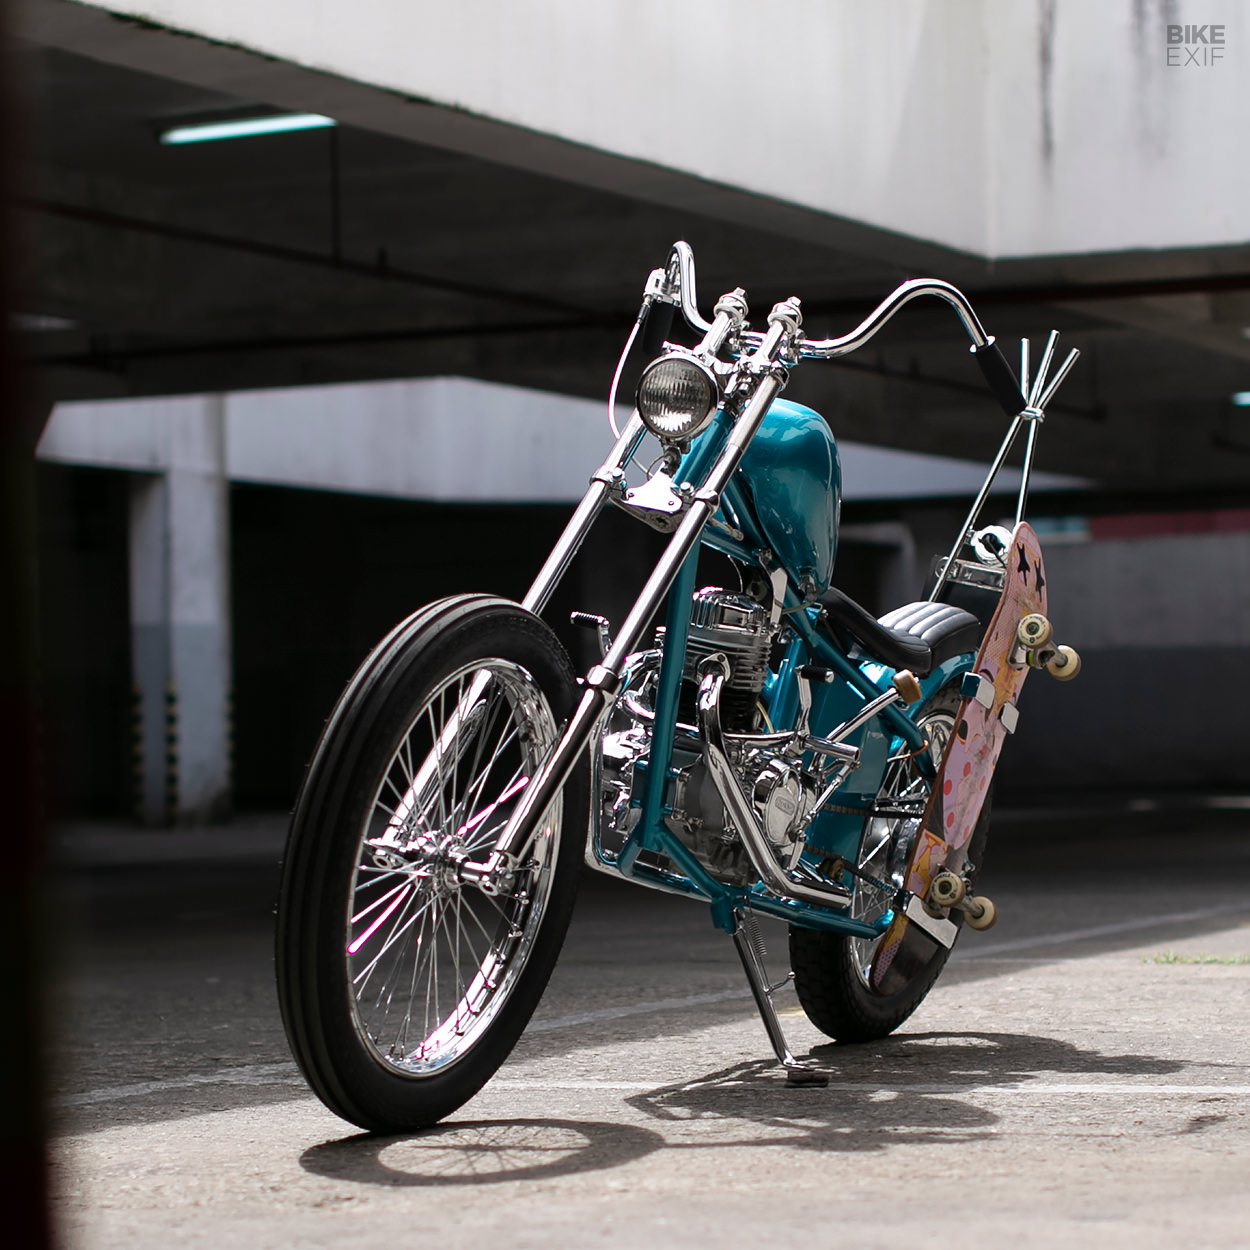 Honda CG110 mini chopper motorcycle